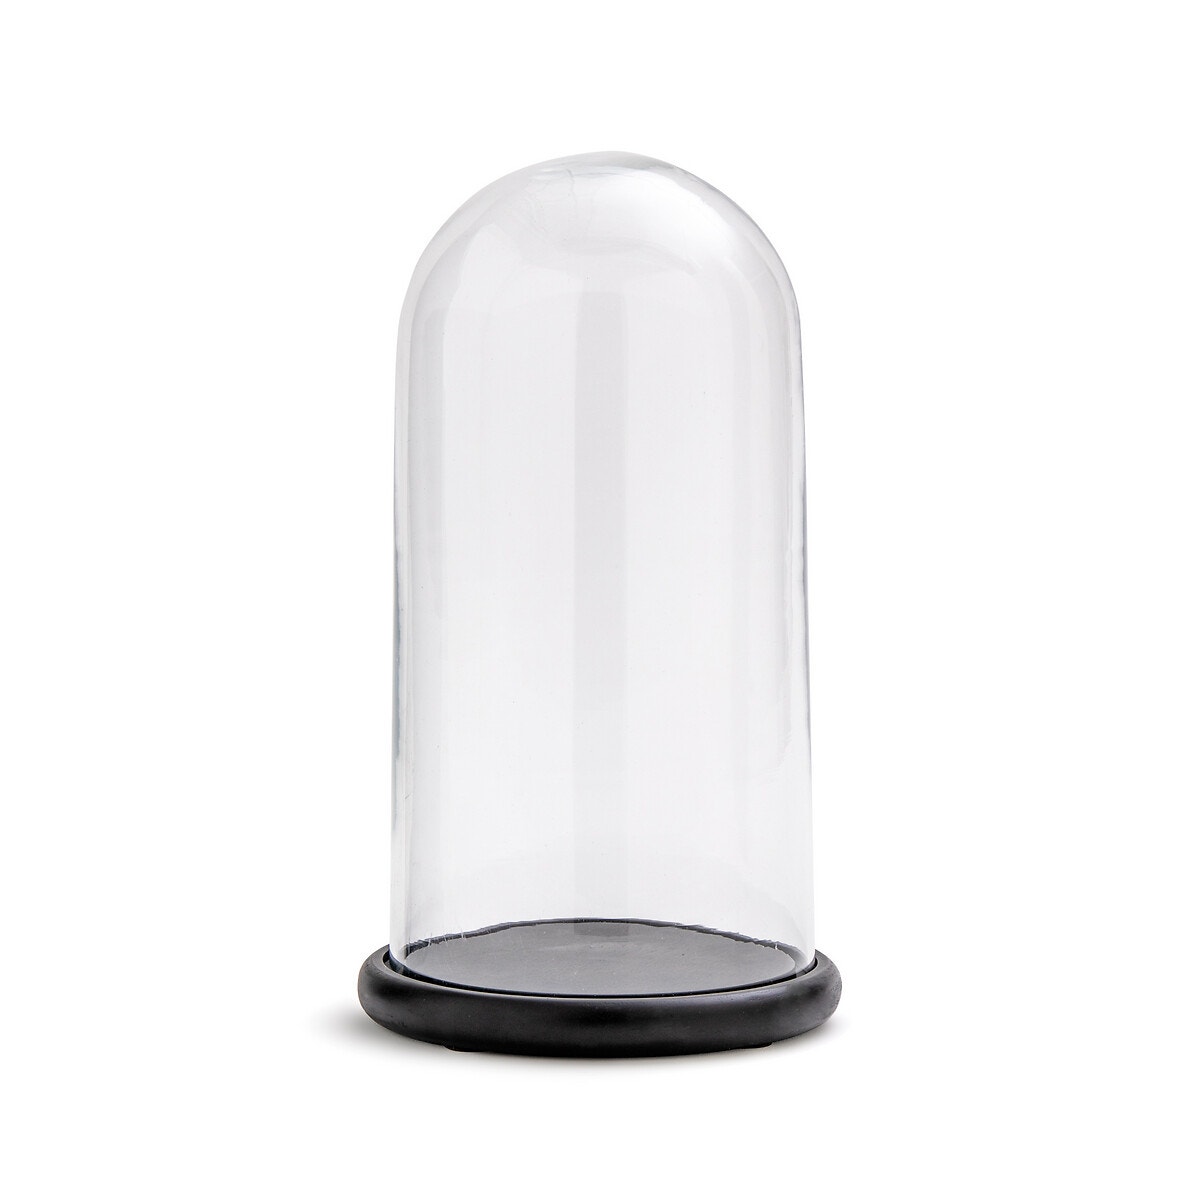 Колпак из стекла. Стеклянный колпак прямоугольный. Стеклянный колпак 40 см. Стеклянный колпак для светильника. Прозрачный колпак.